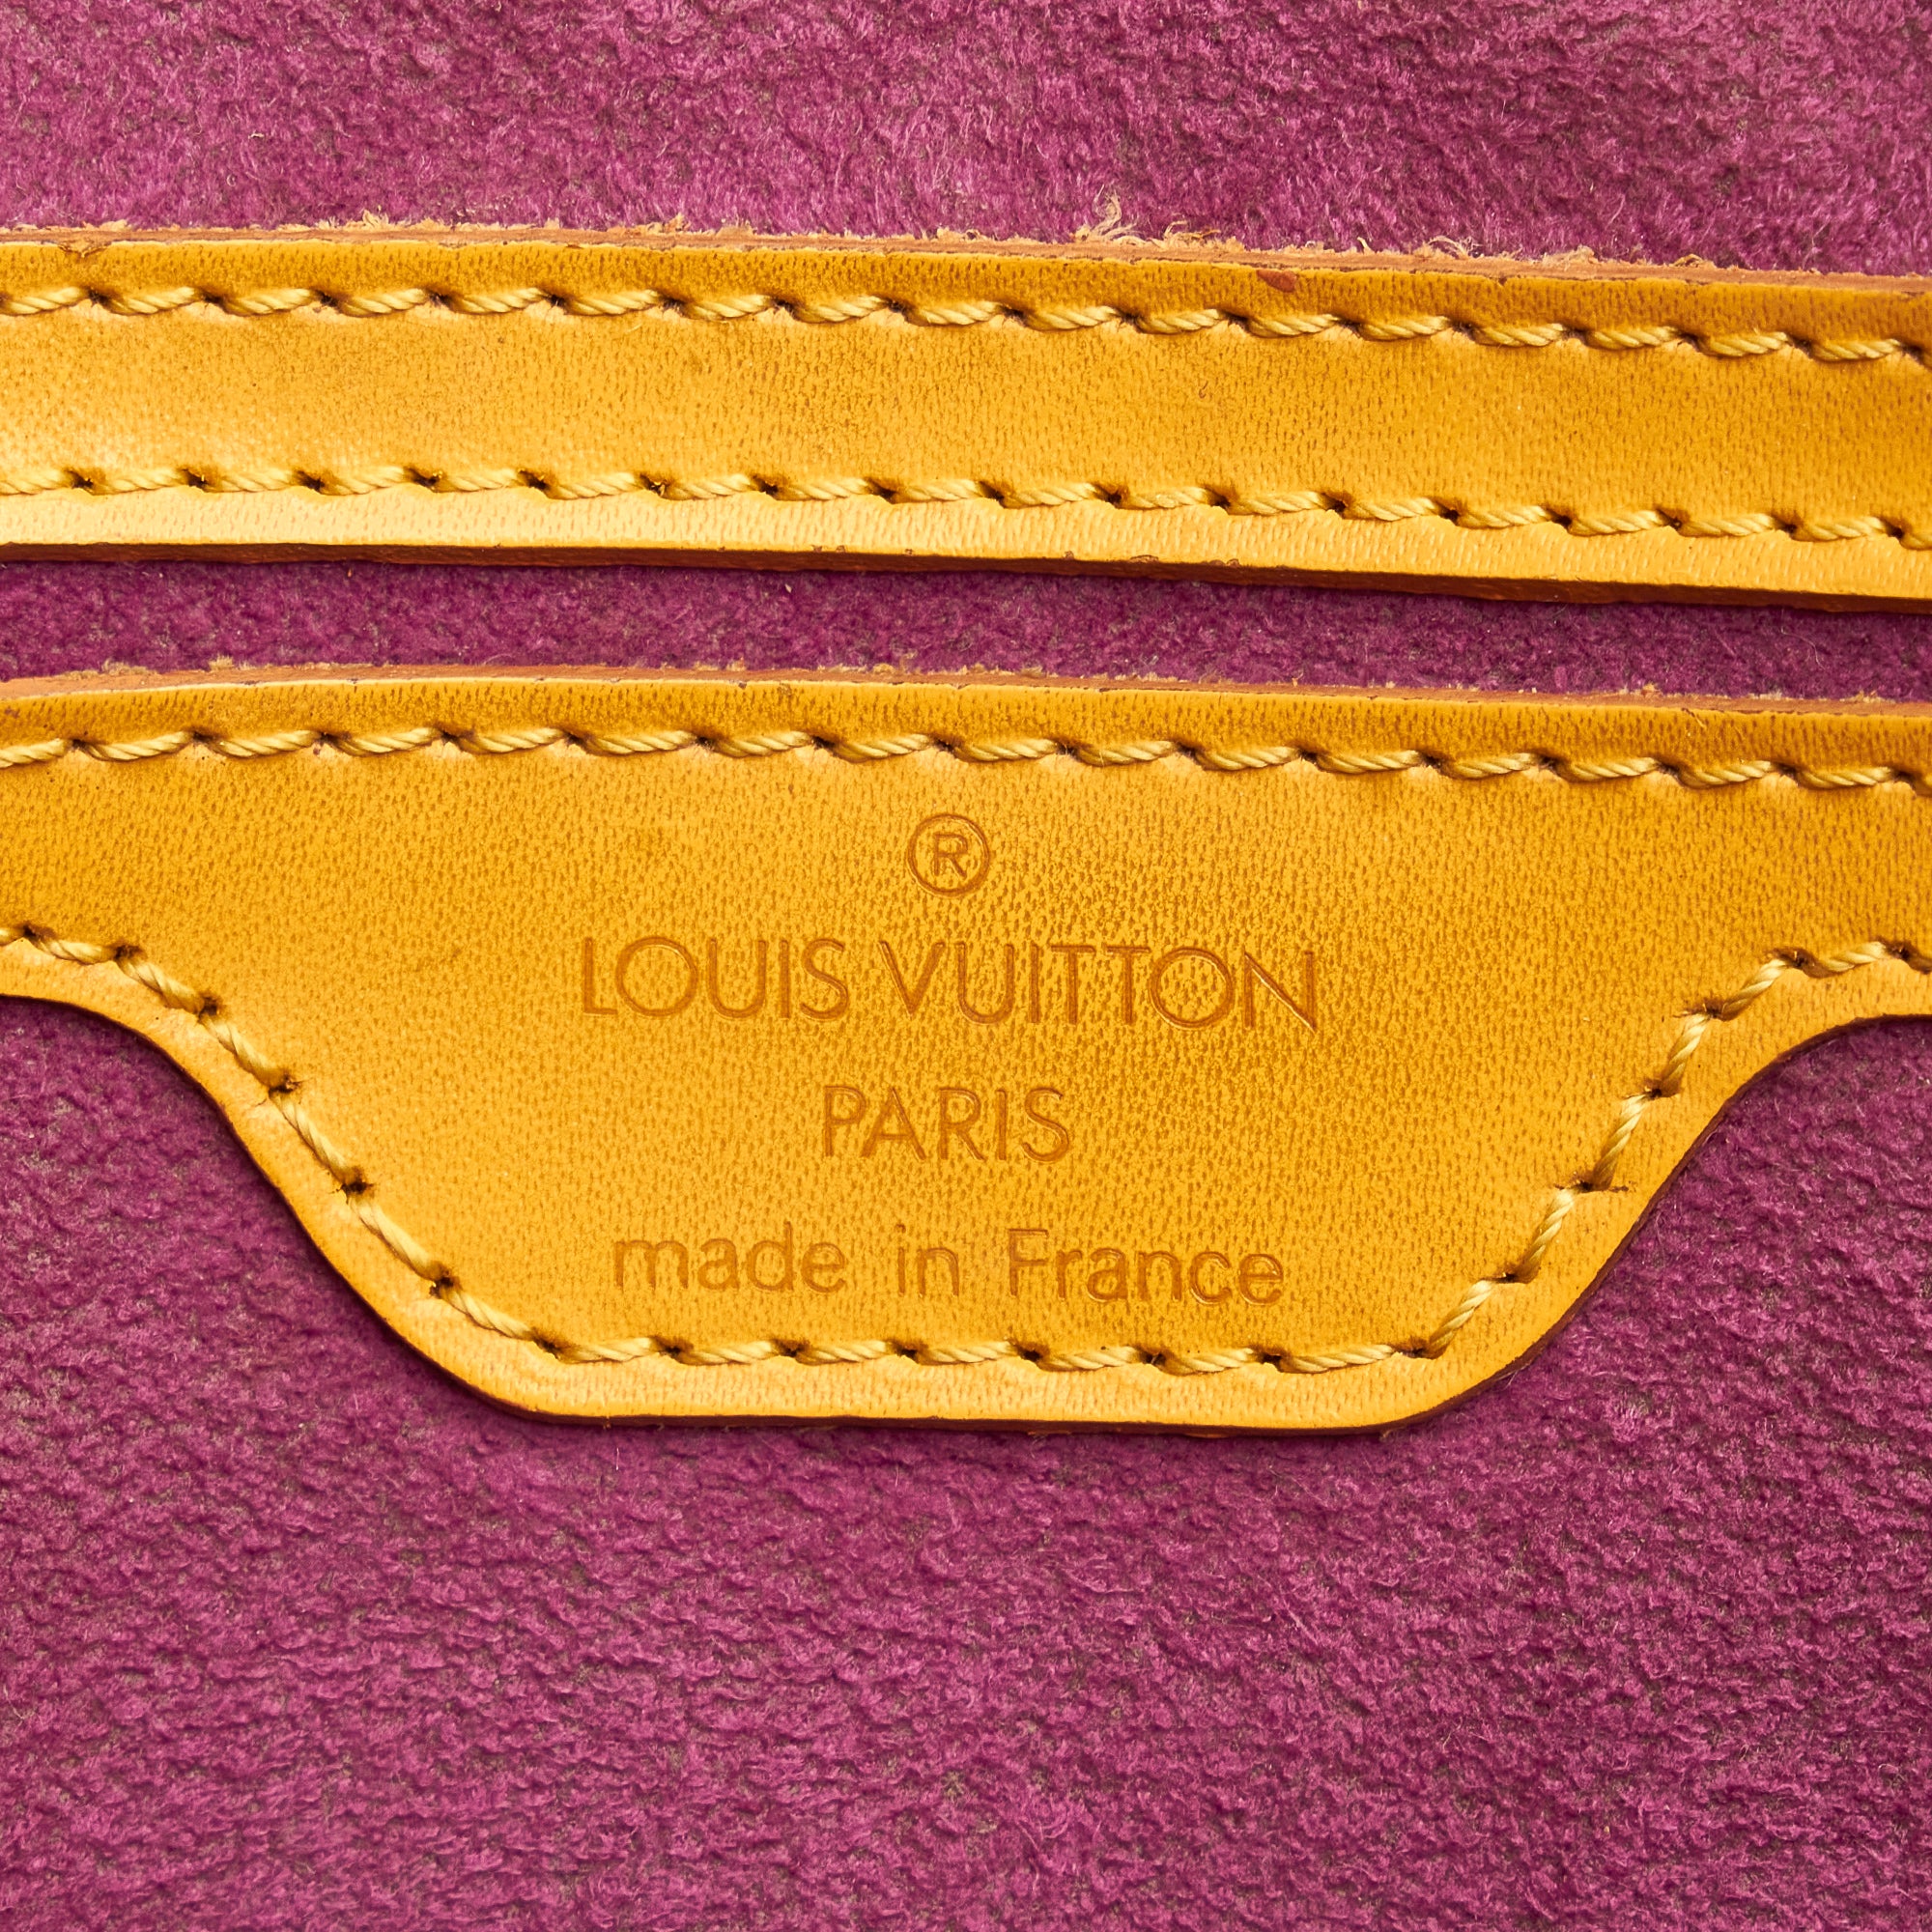 LOUIS VUITTON Yellow Epi St Jacques PM - The Purse Ladies